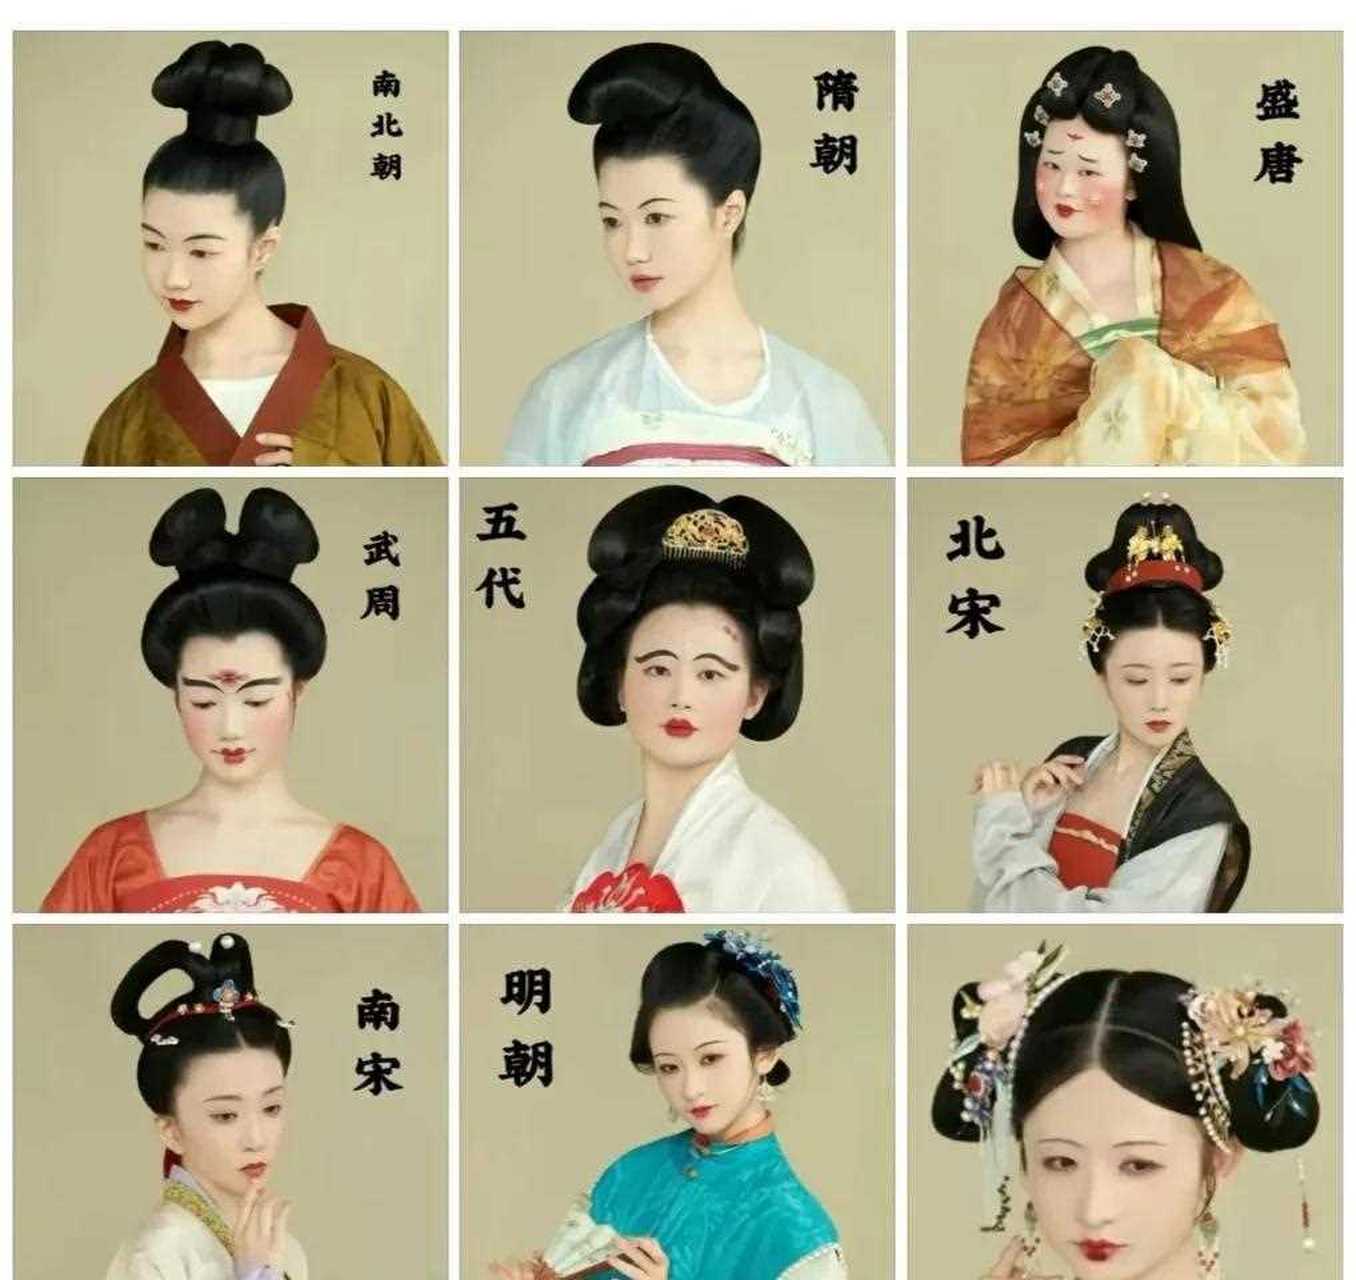 看到一张图有点意思,历朝历代女性发型,最后一个是清朝的